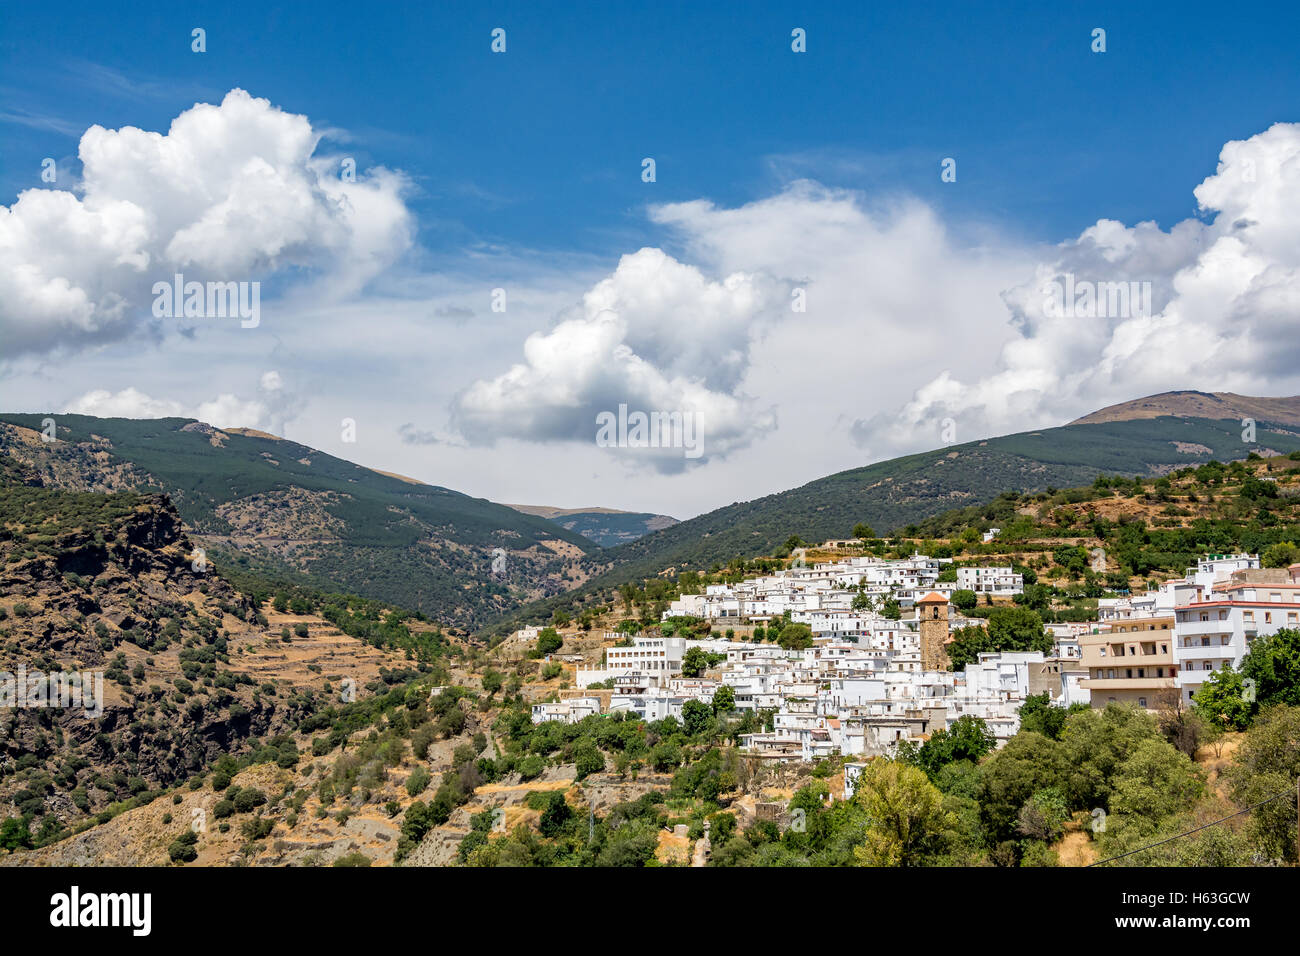 Avis de Bayárcal, le plus haut situé dans la ville de Sierra Nevada avec les montagnes pittoresques, la région d'Almeria, Espagne Banque D'Images